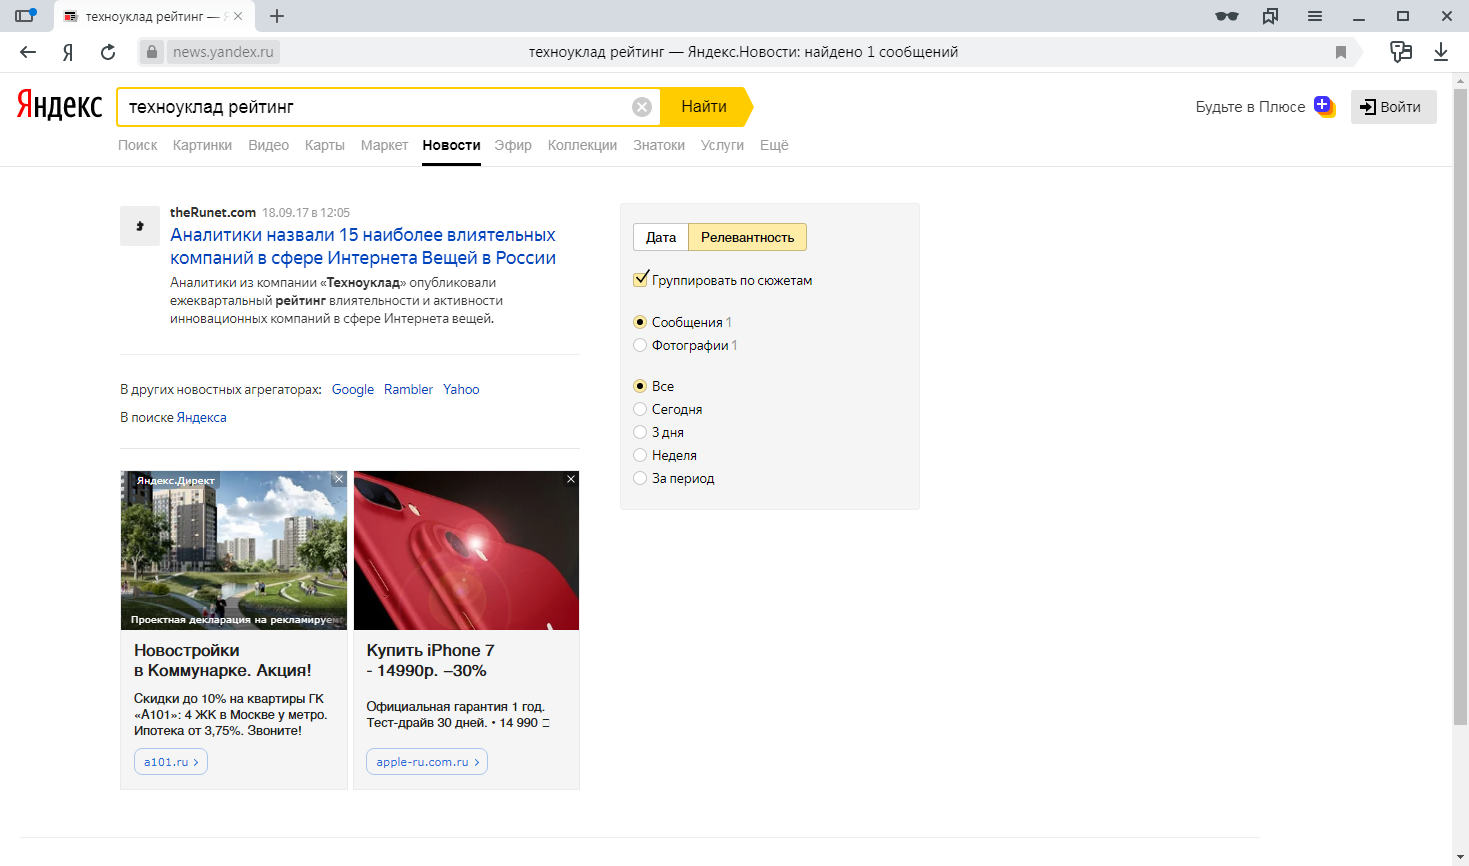 Поиск публикации по ключевым словам в информационно-аналитическом бесплатном сервисе Яндекс.Новости